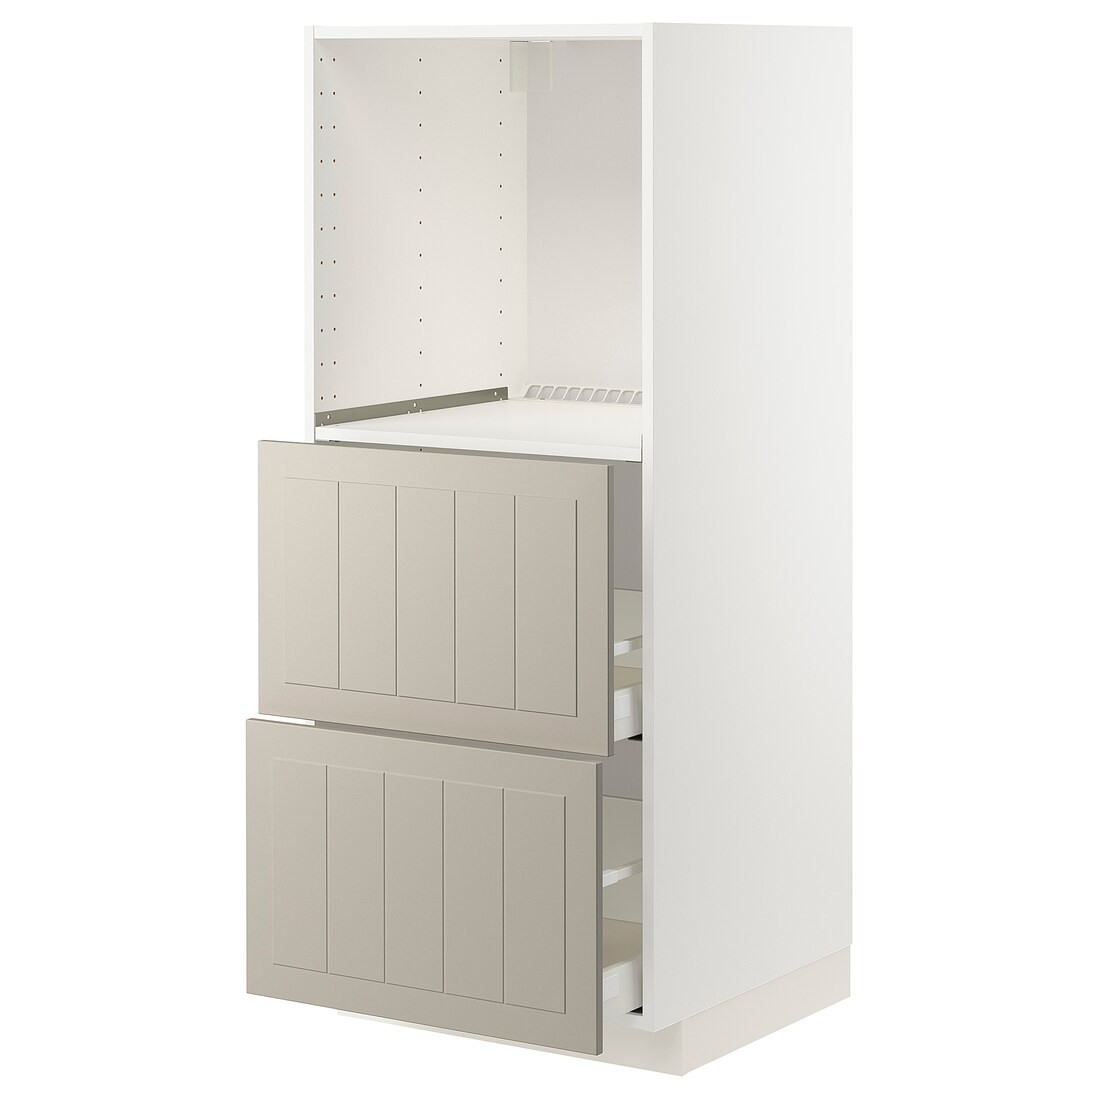 METOD МЕТОД / MAXIMERA МАКСИМЕРА Высокий шкаф с 2 ящиками для духовки, белый / Stensund бежевый, 60x60x140 см